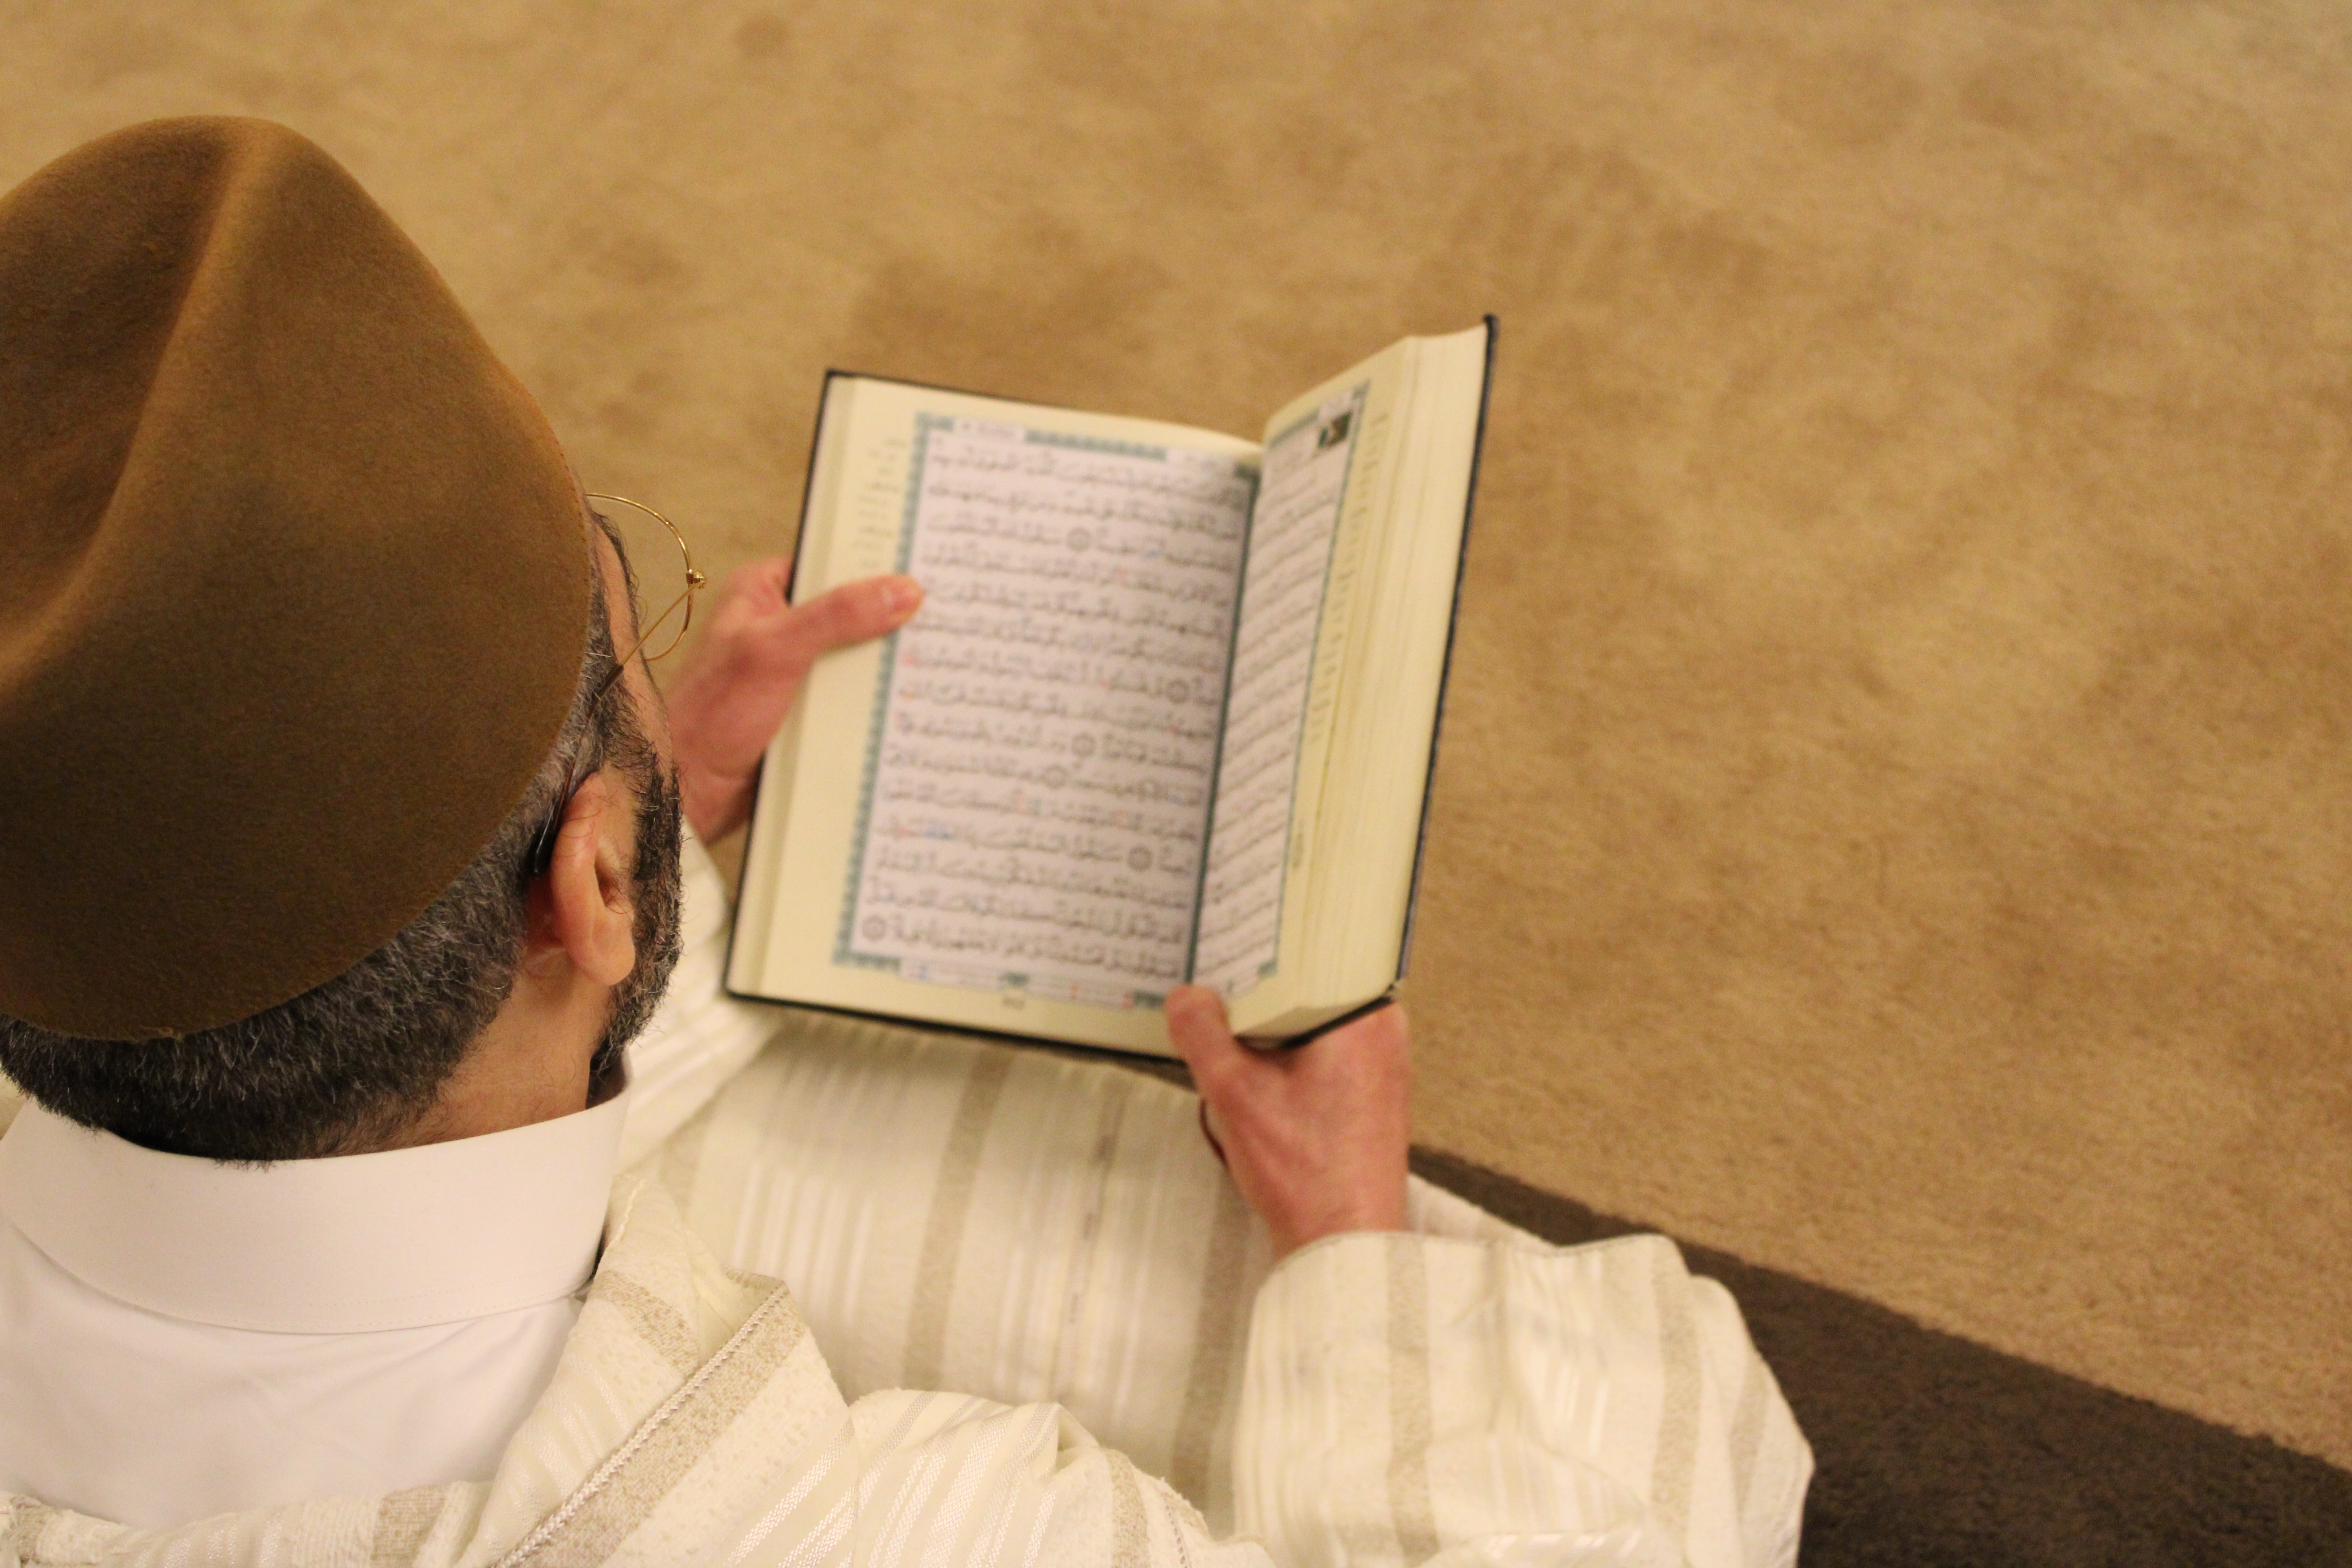 تسهيل وصول القرآن الكريم وتبليغه للناس، واجب جماعي Quran Coran